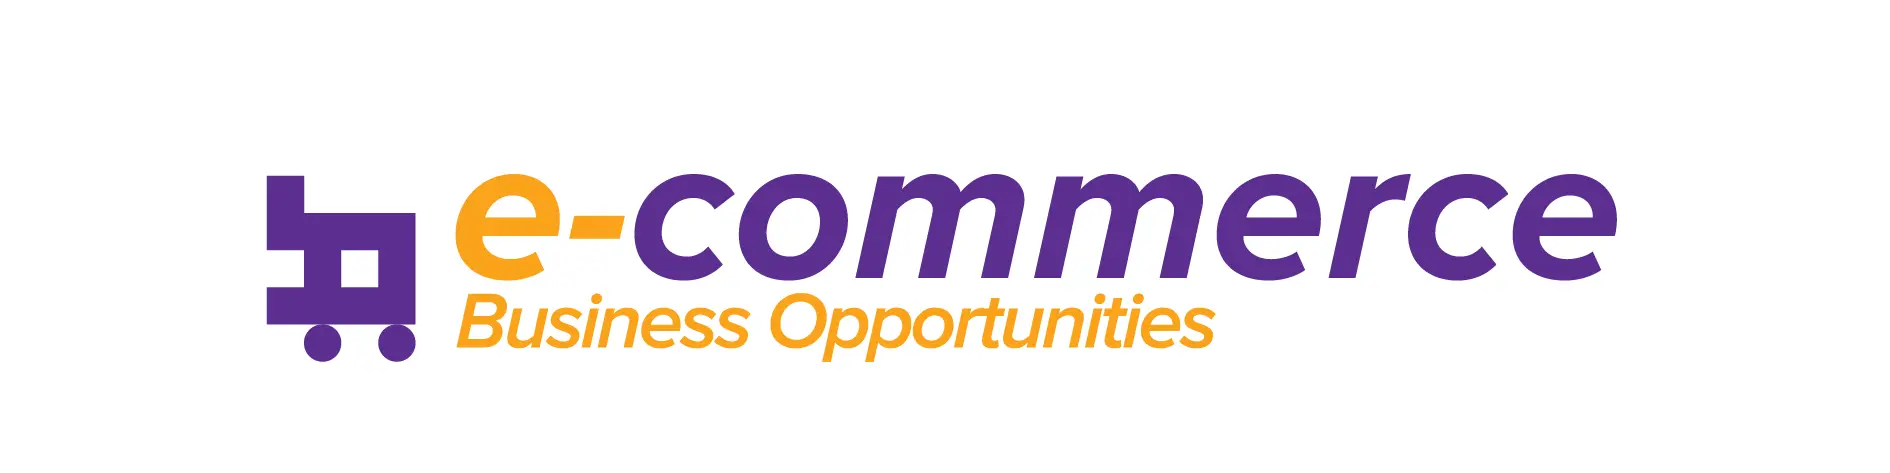 Ecommerce_Logo-01